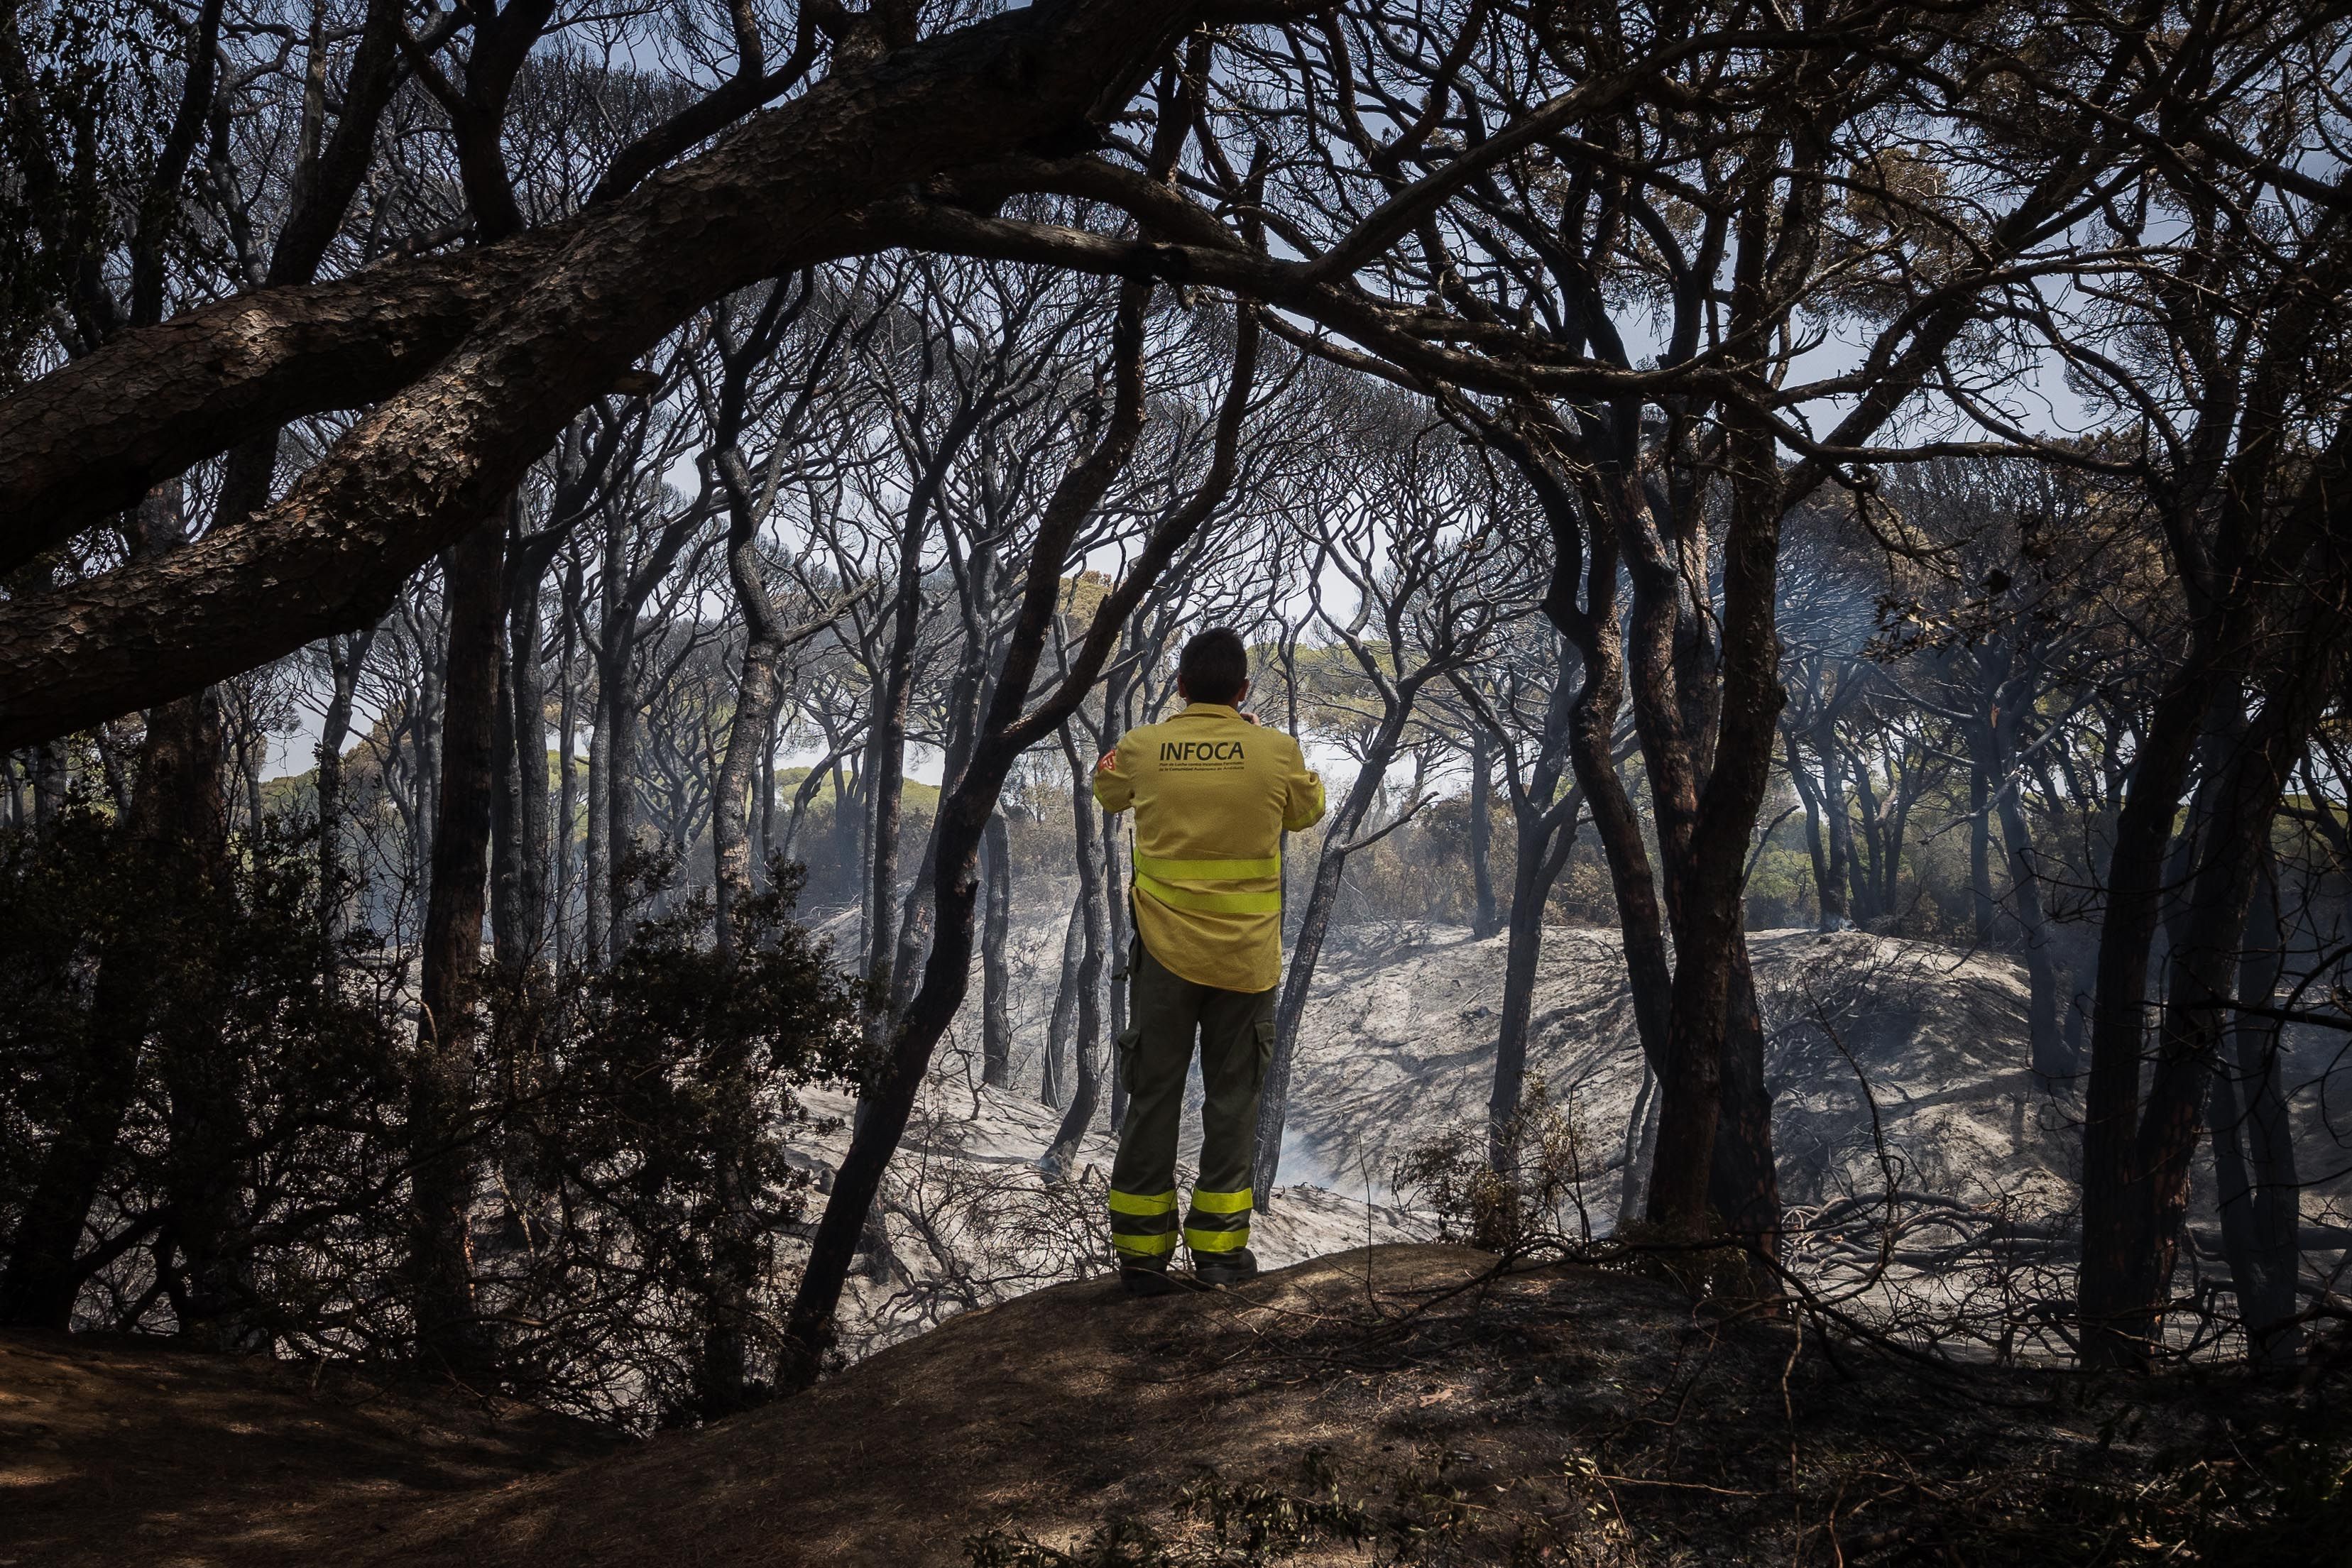 Un bombero del Plan Infoca observa el horizonte del parque de Las Canteras, foco principal del incendio de Puerto Real el pasado verano.